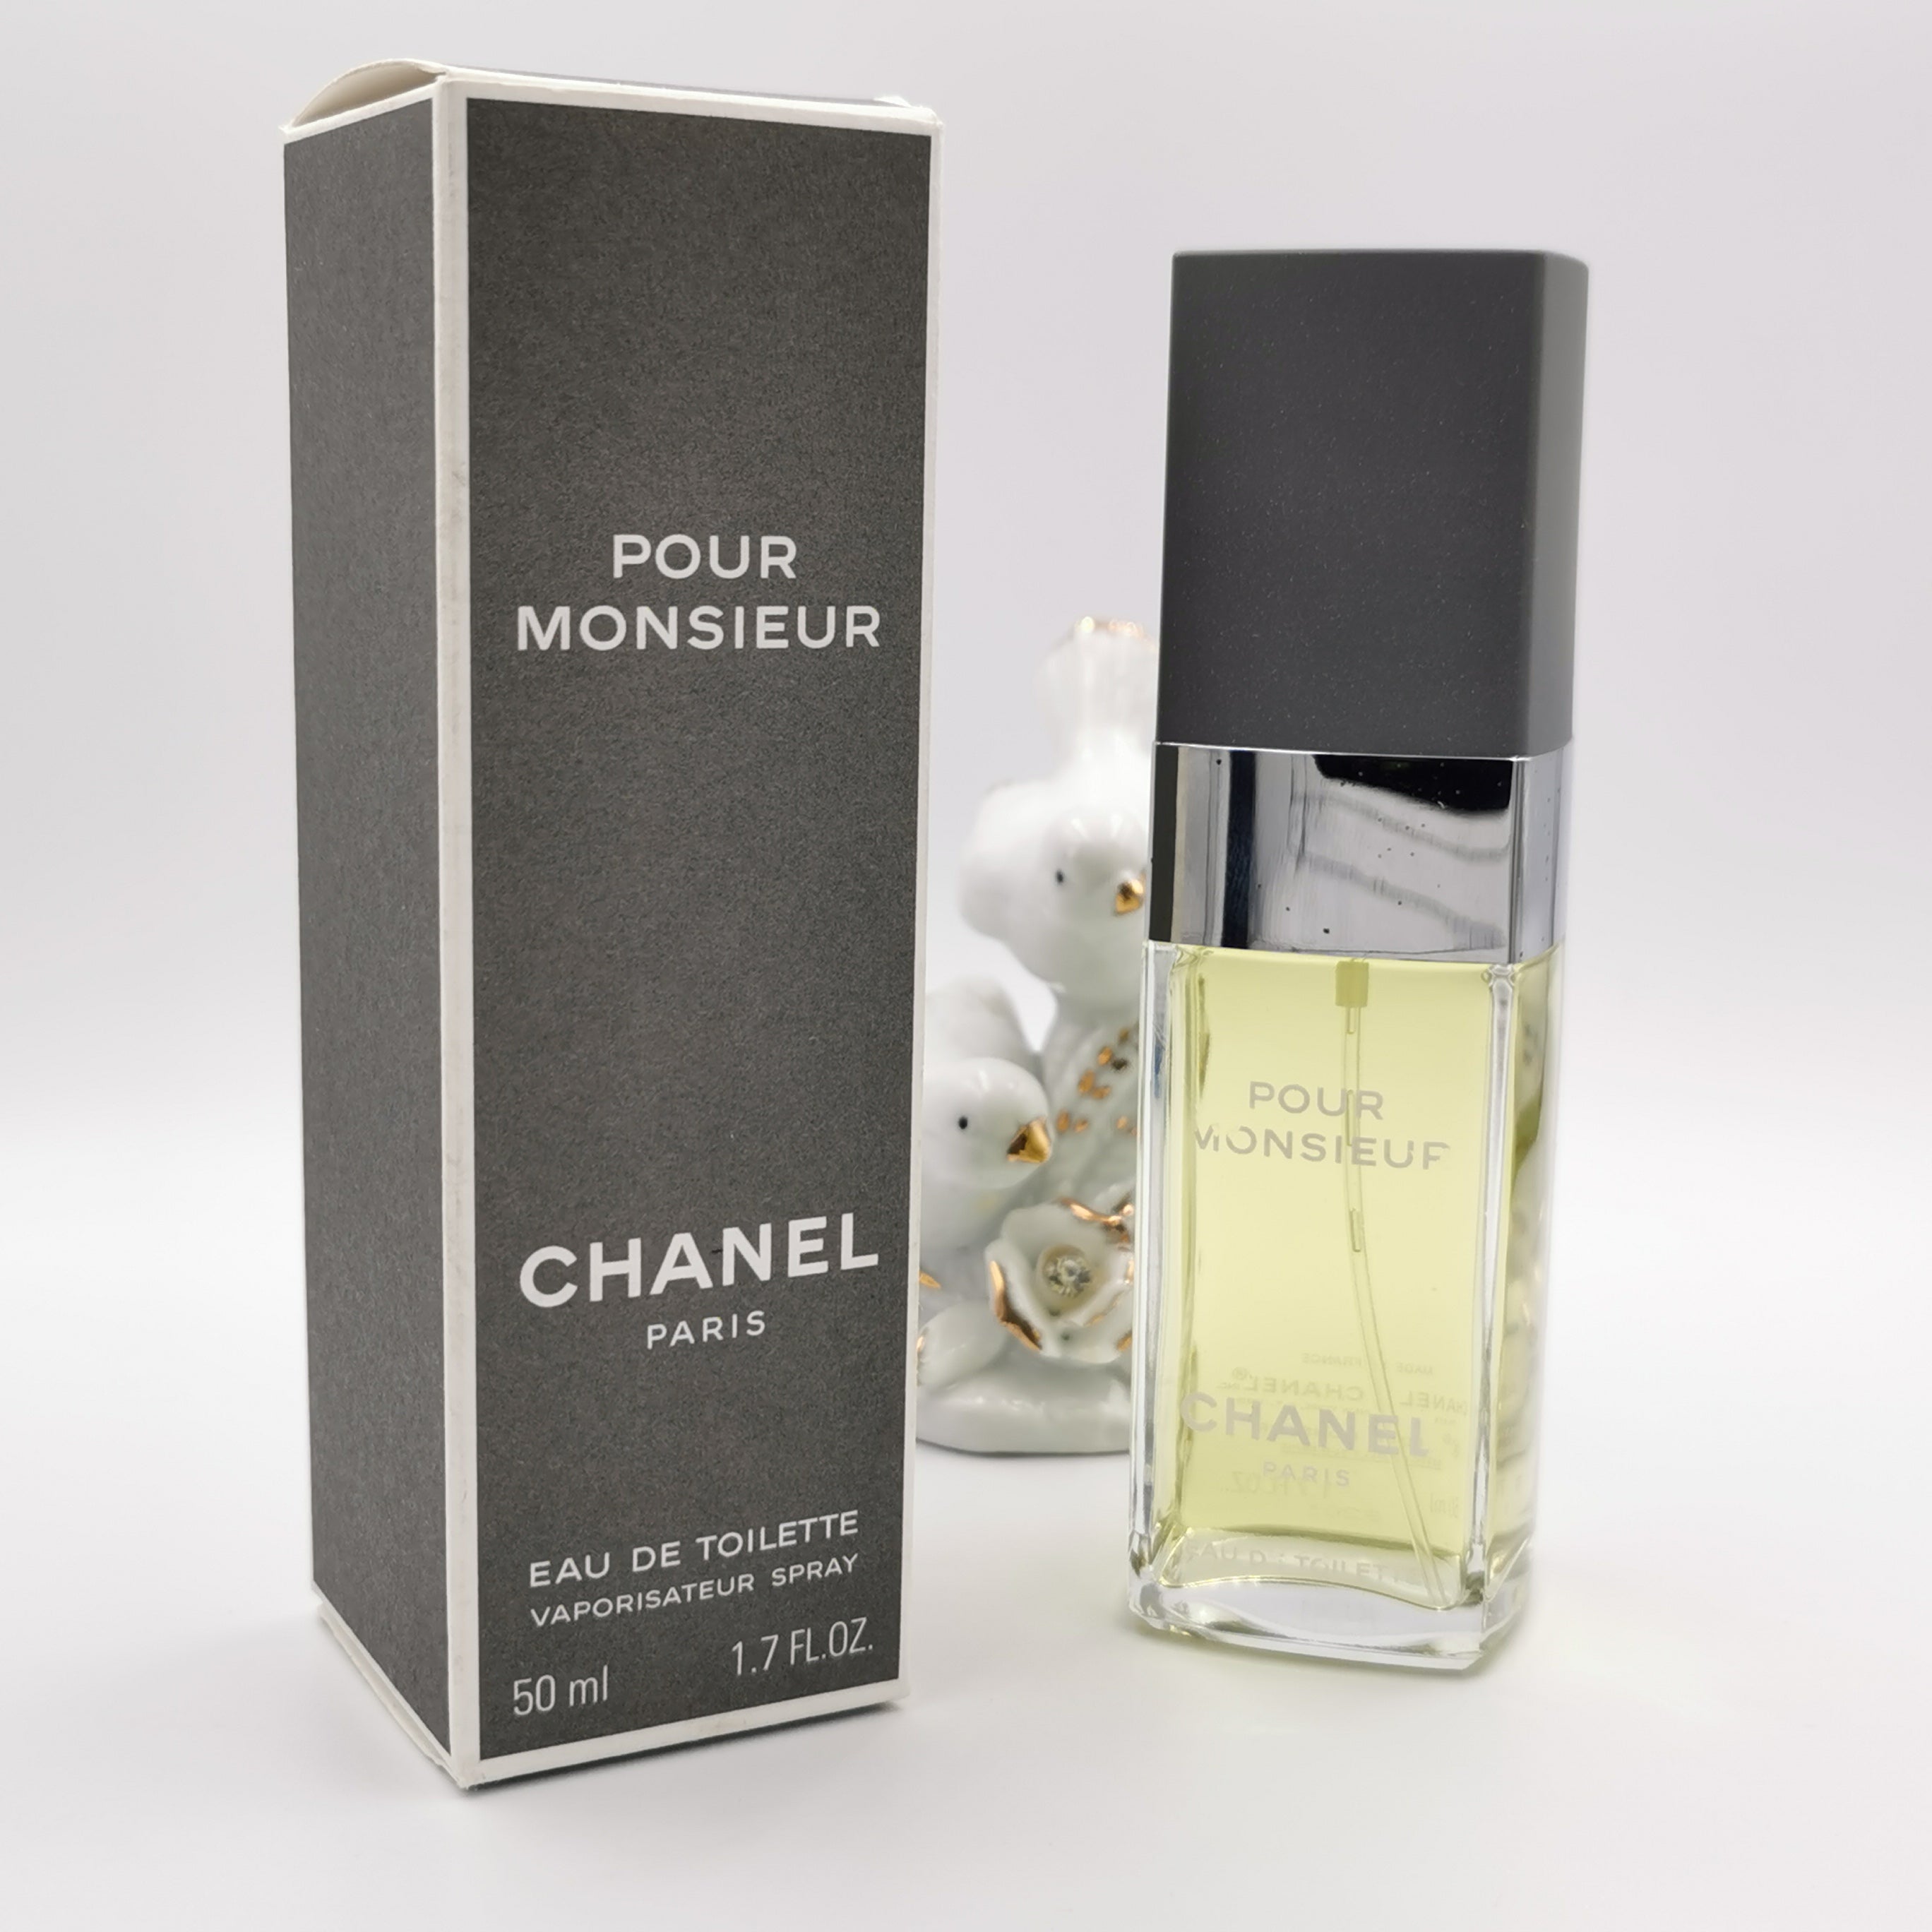 Chanel Pour Monsieur Eau De Parfum Spray - Stylemyle